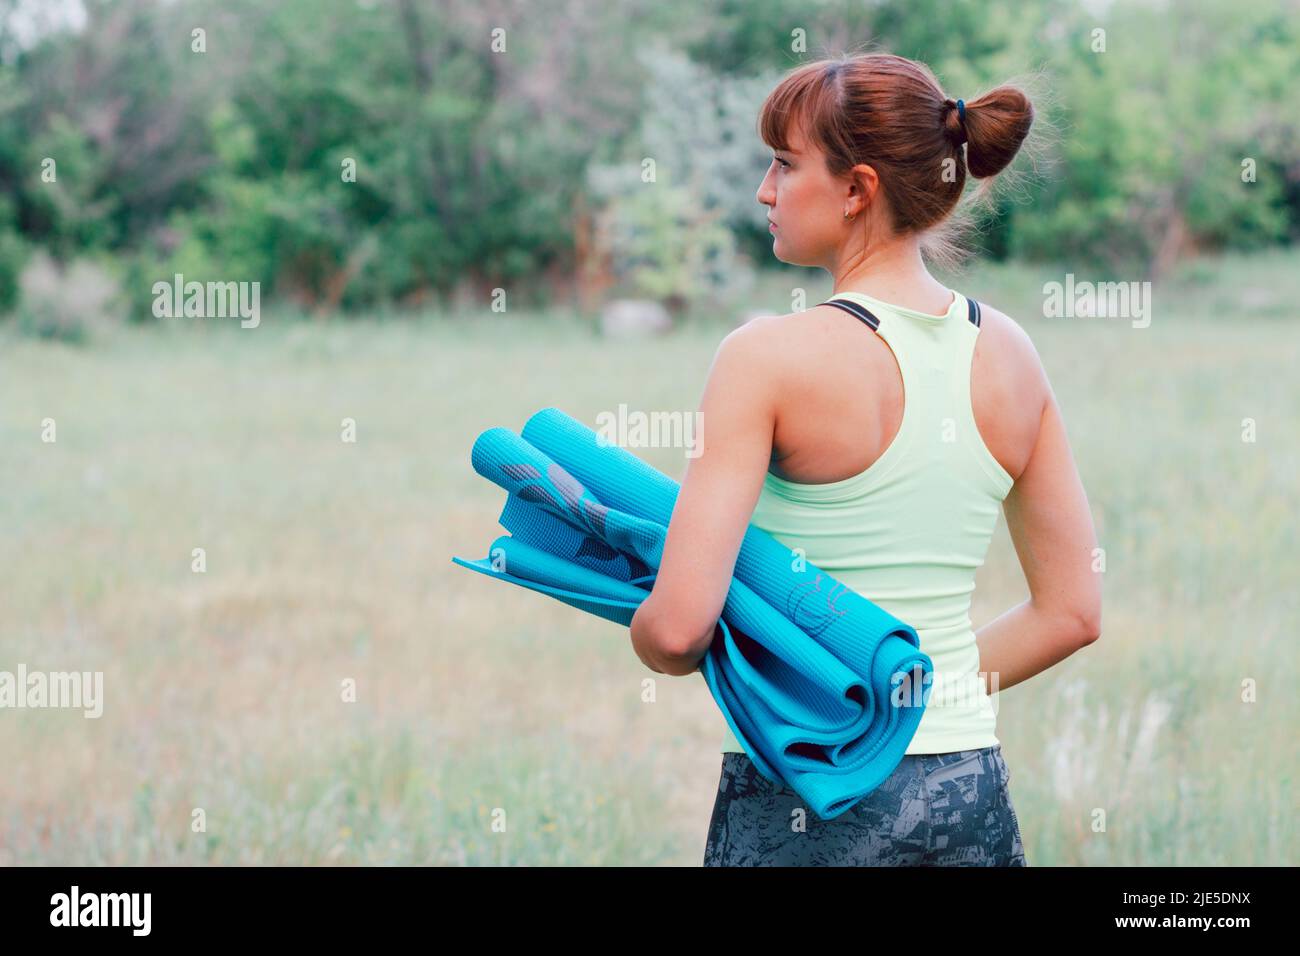 Junge schlanke Frau in Sportkleidung mit Yogamatte, während sie zum Training im Freien geht Stockfoto